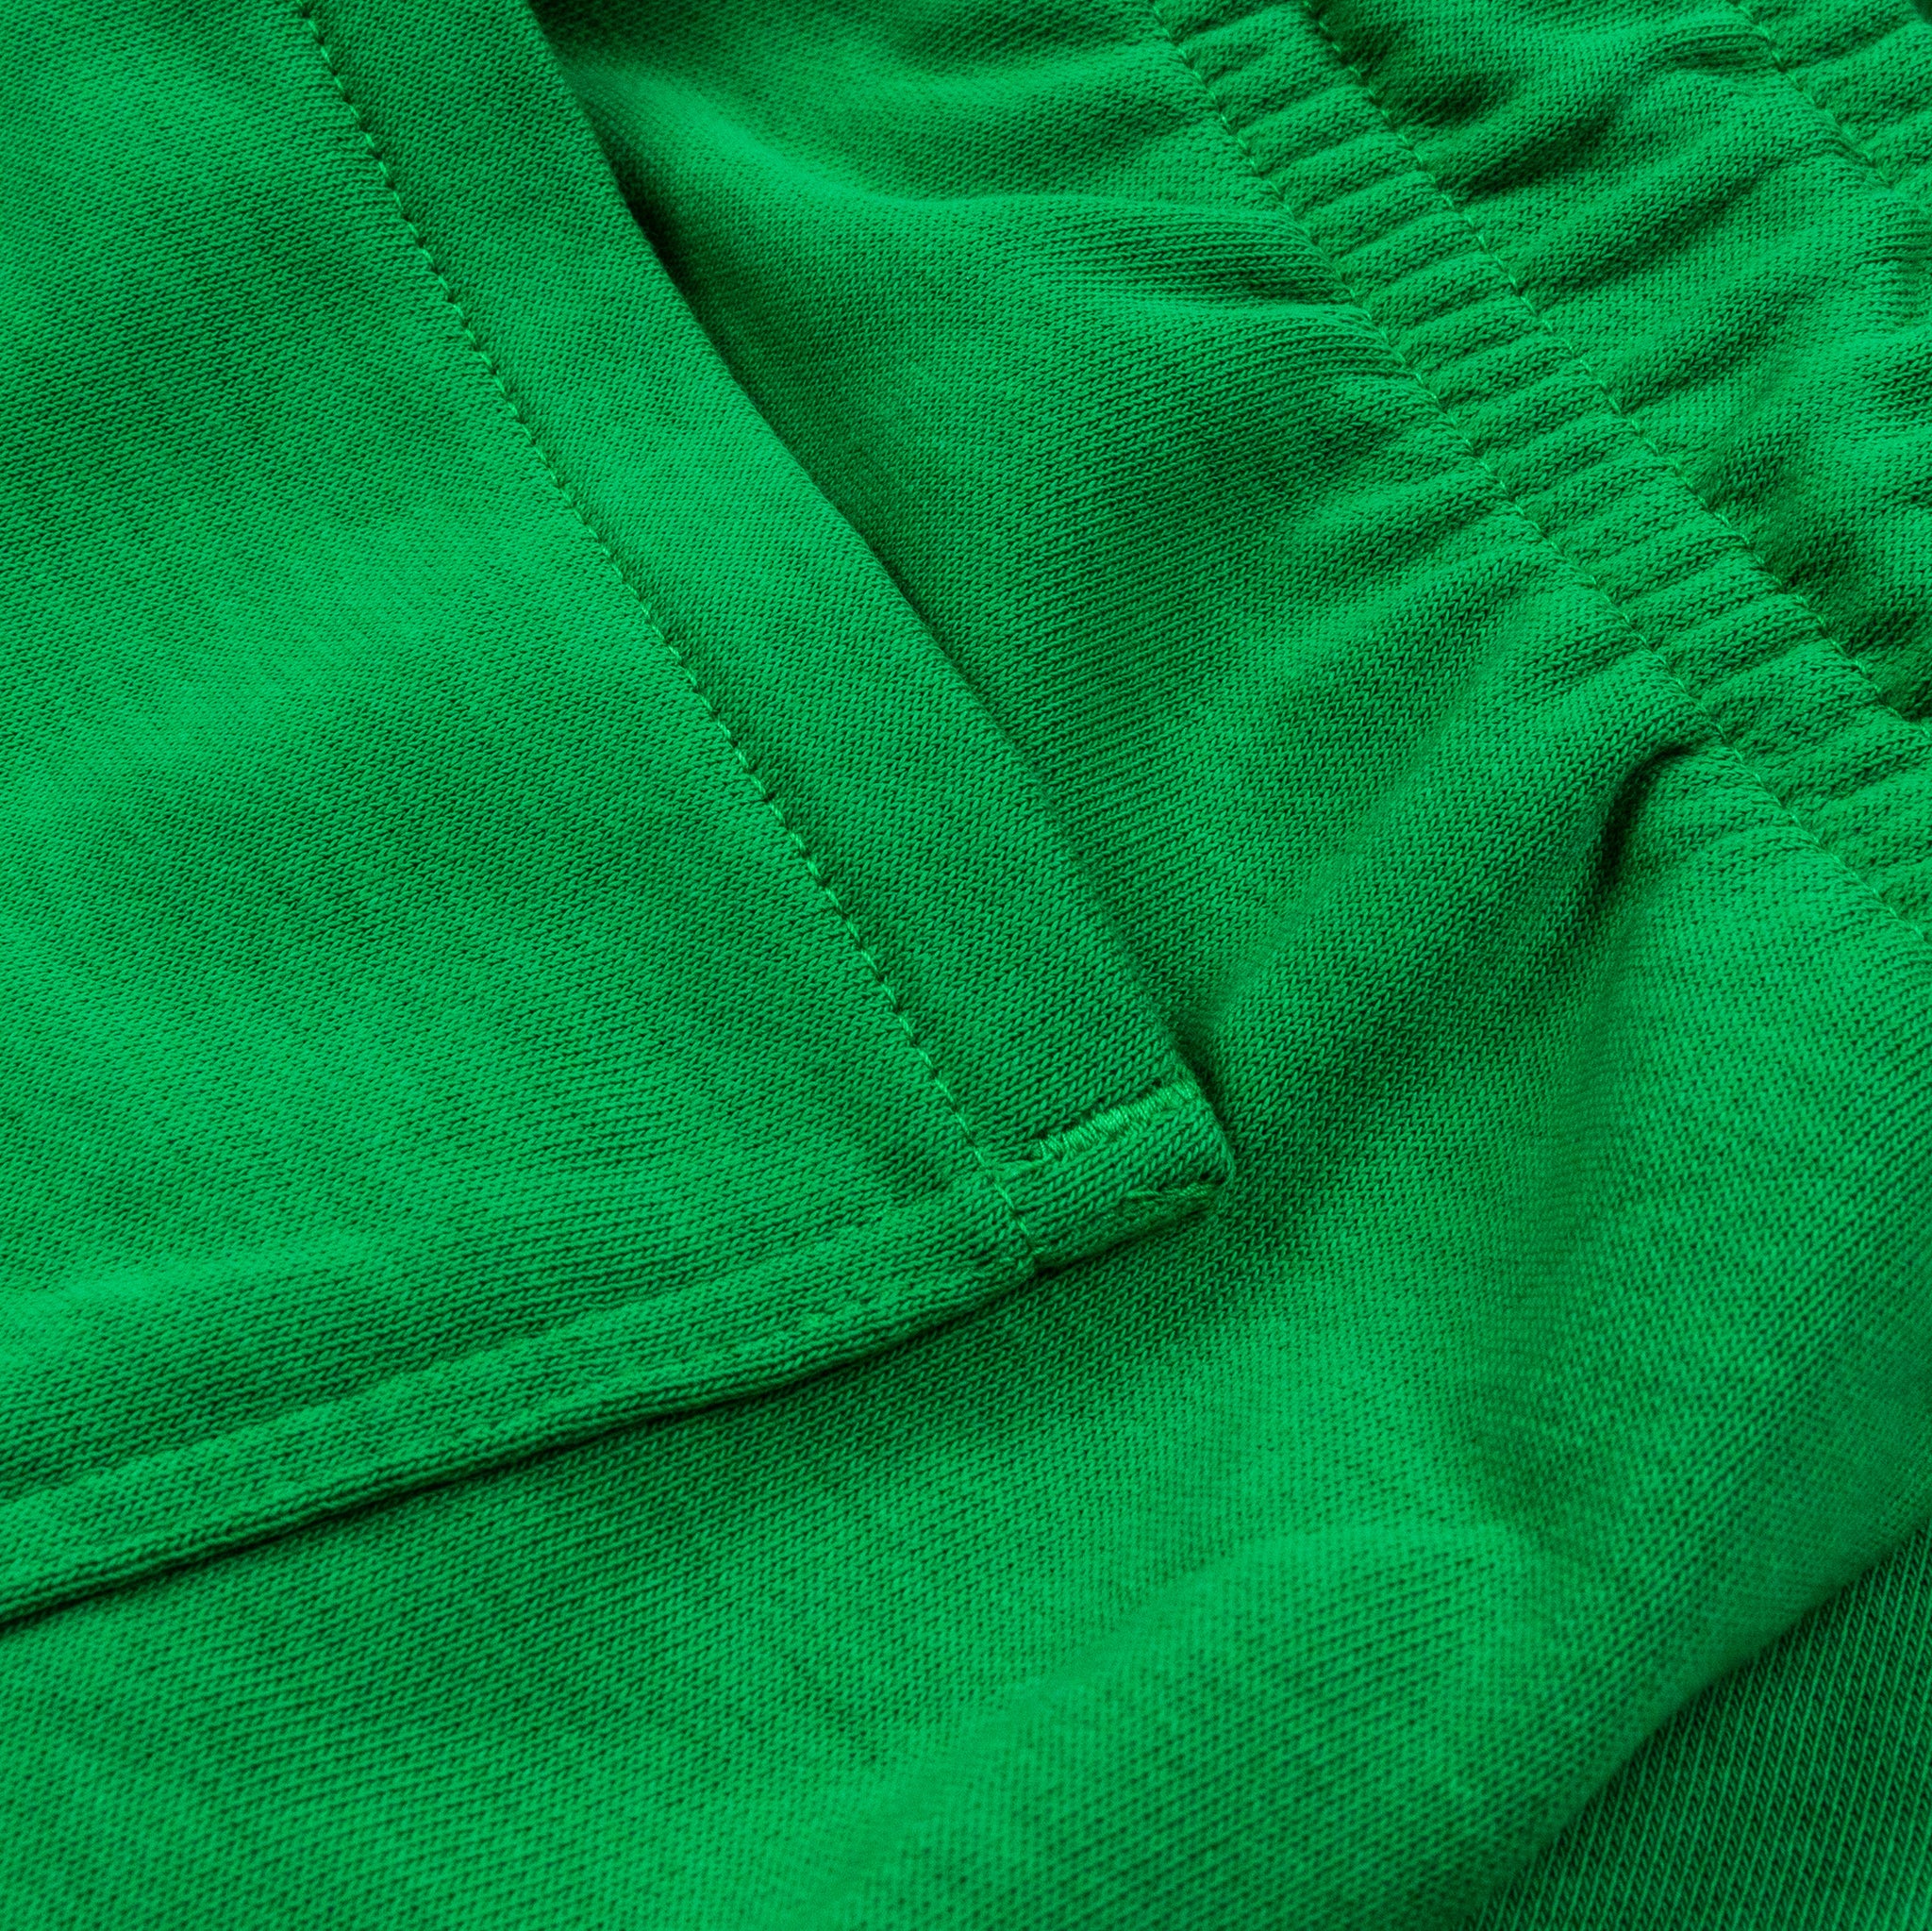 Jordan Essentials Fleece Mens Short Green DX9667-310 – Shoe Palace